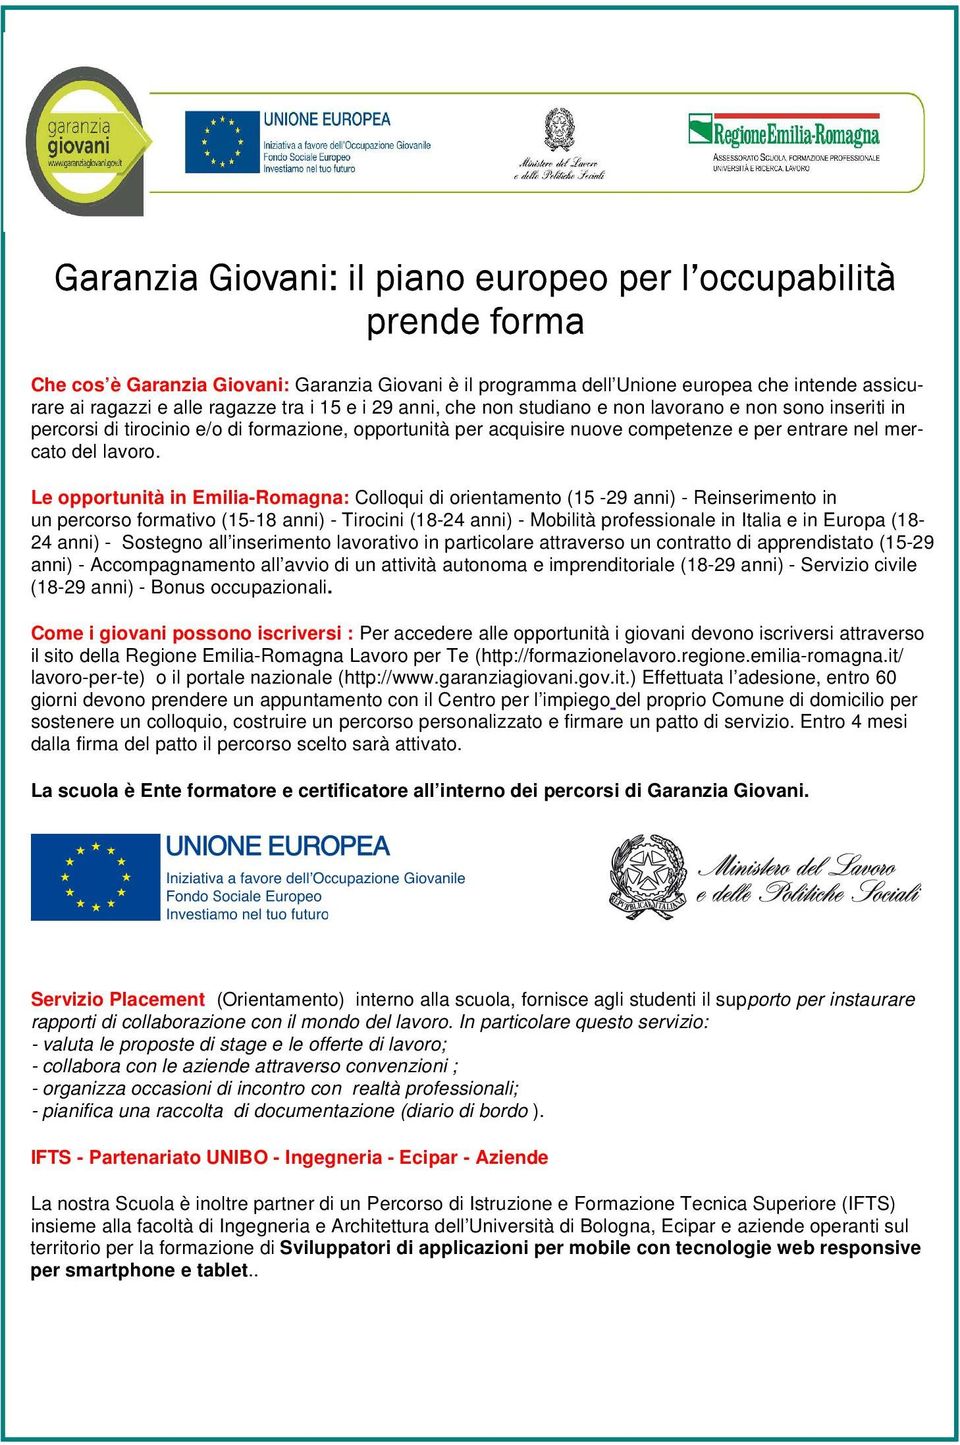 Le opportunità in Emilia-Romagna: Colloqui di orientamento (15-29 anni) - Reinserimento in un percorso formativo (15-18 anni) - Tirocini (18-24 anni) - Mobilità professionale in Italia e in Europa